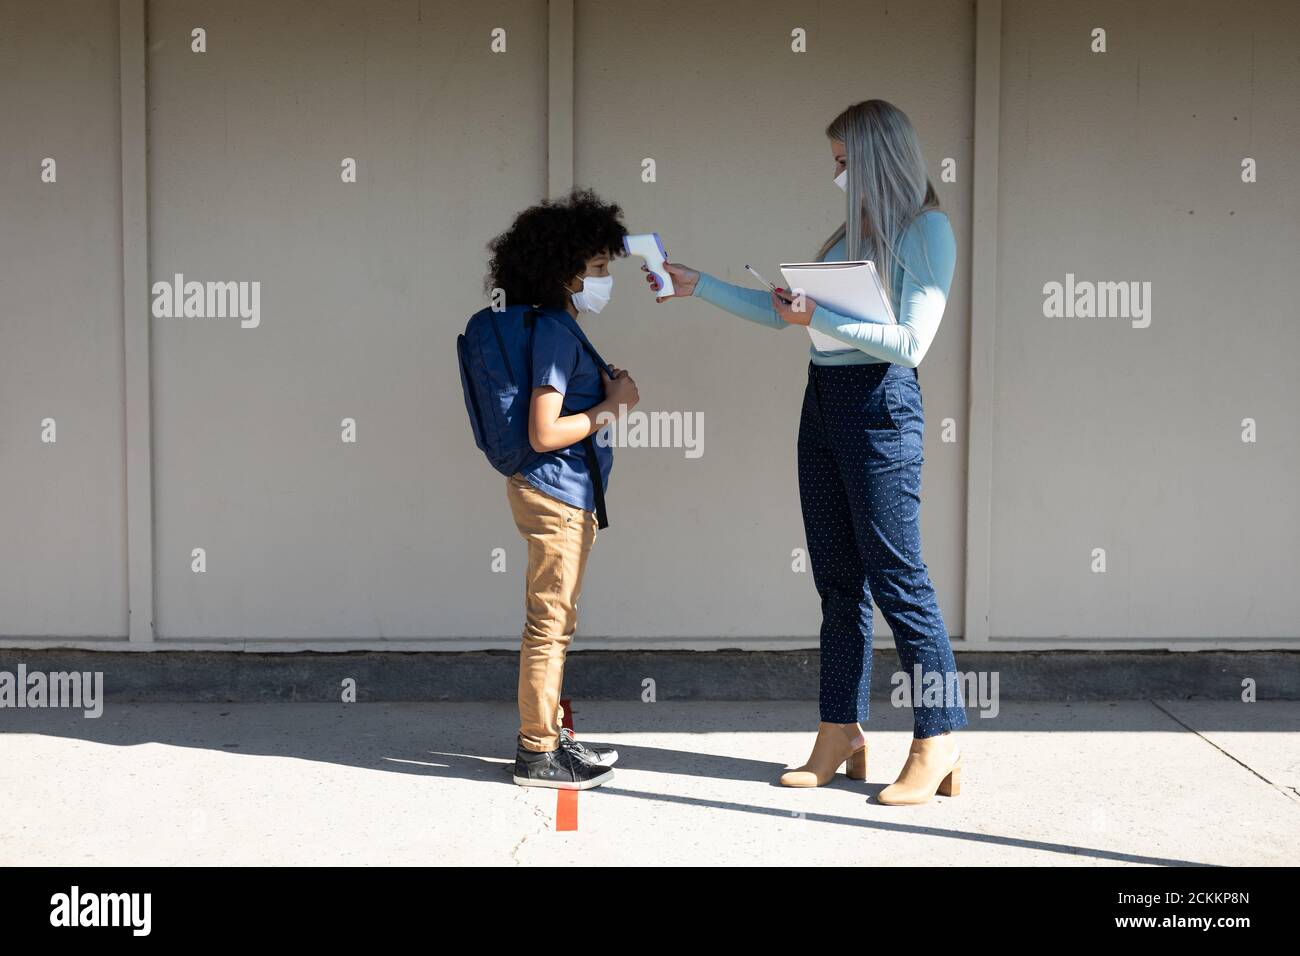 Enseignante mesurant la température d'un garçon portant un masque facial à l'école Banque D'Images